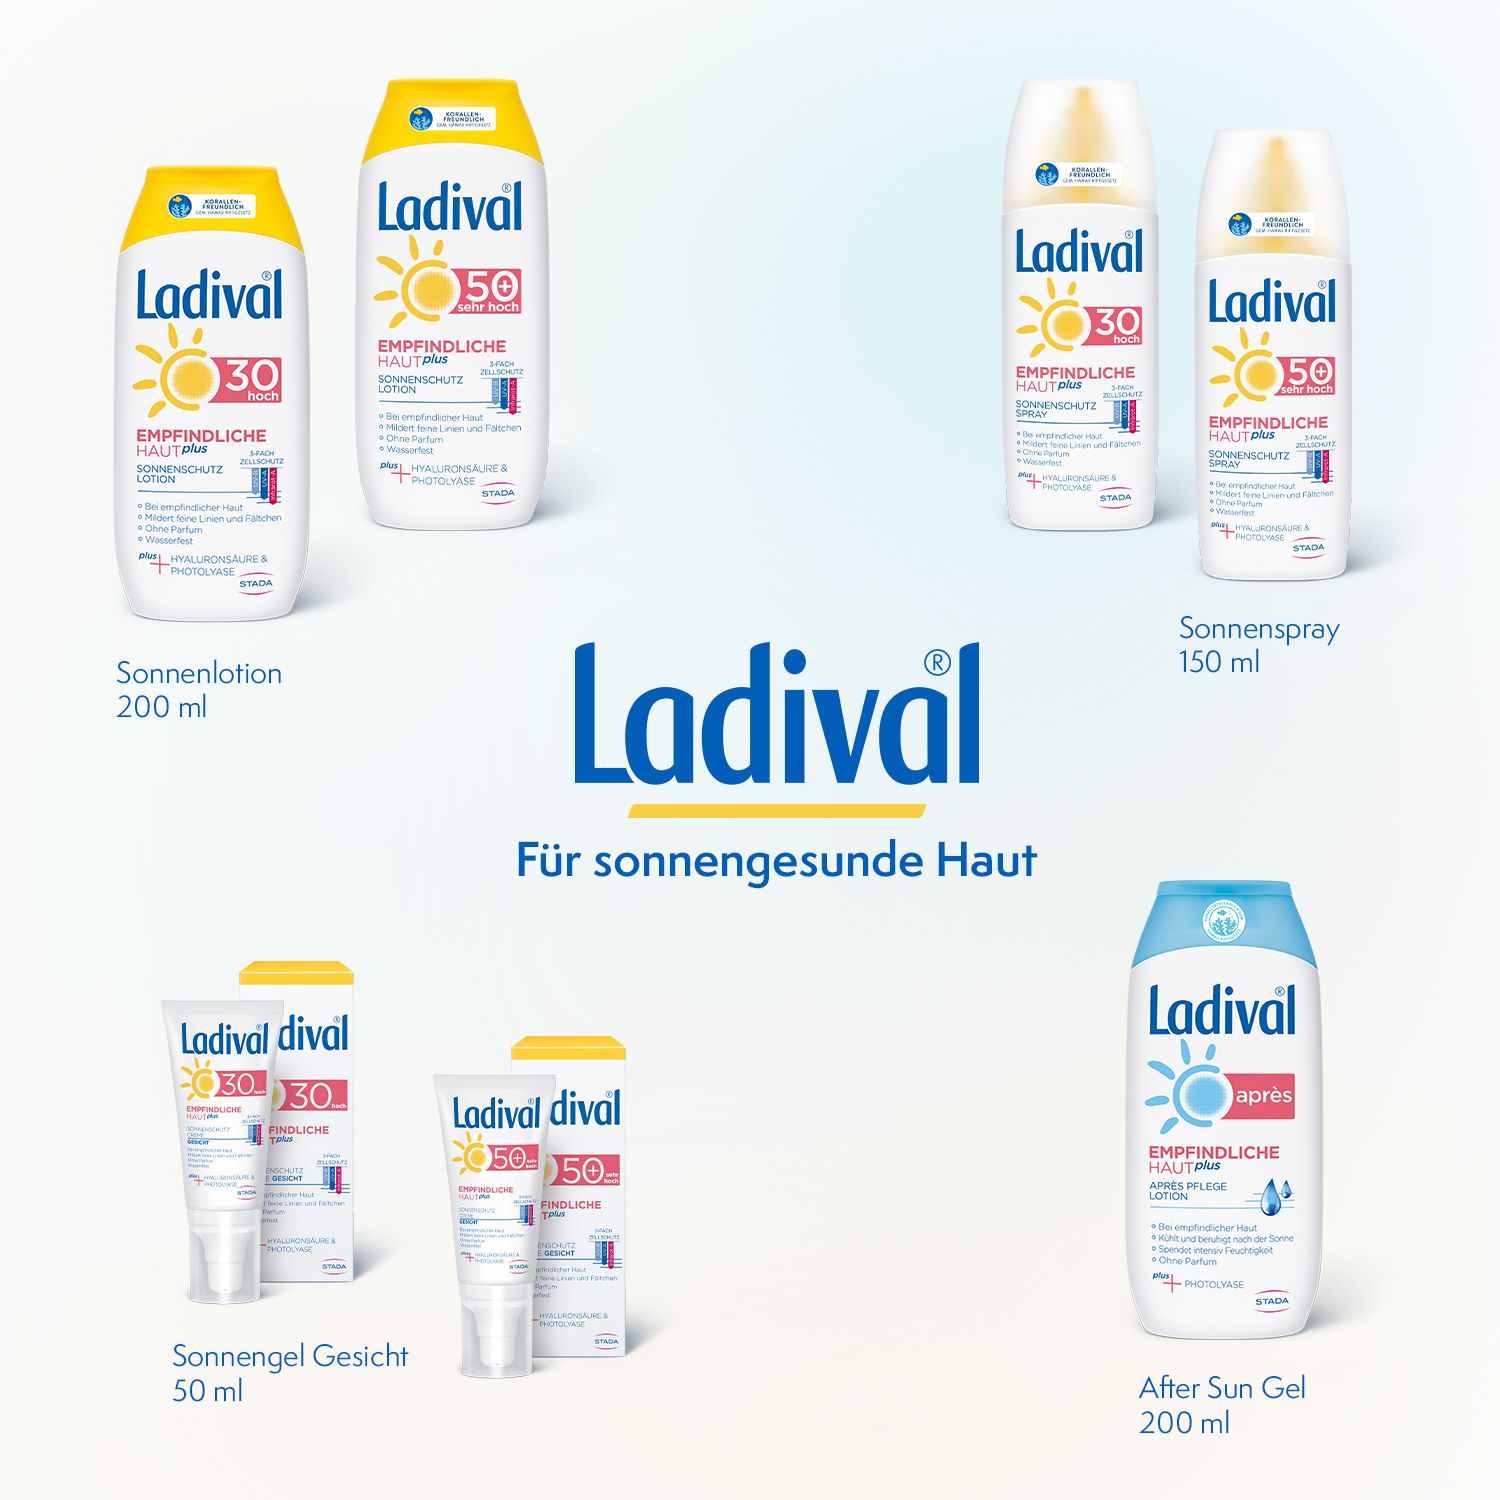 Ladival® Empfindliche Haut plus pflegendes Sonnenschutz Spray LSF 30 mit Hyaluronsäure & Photolyase